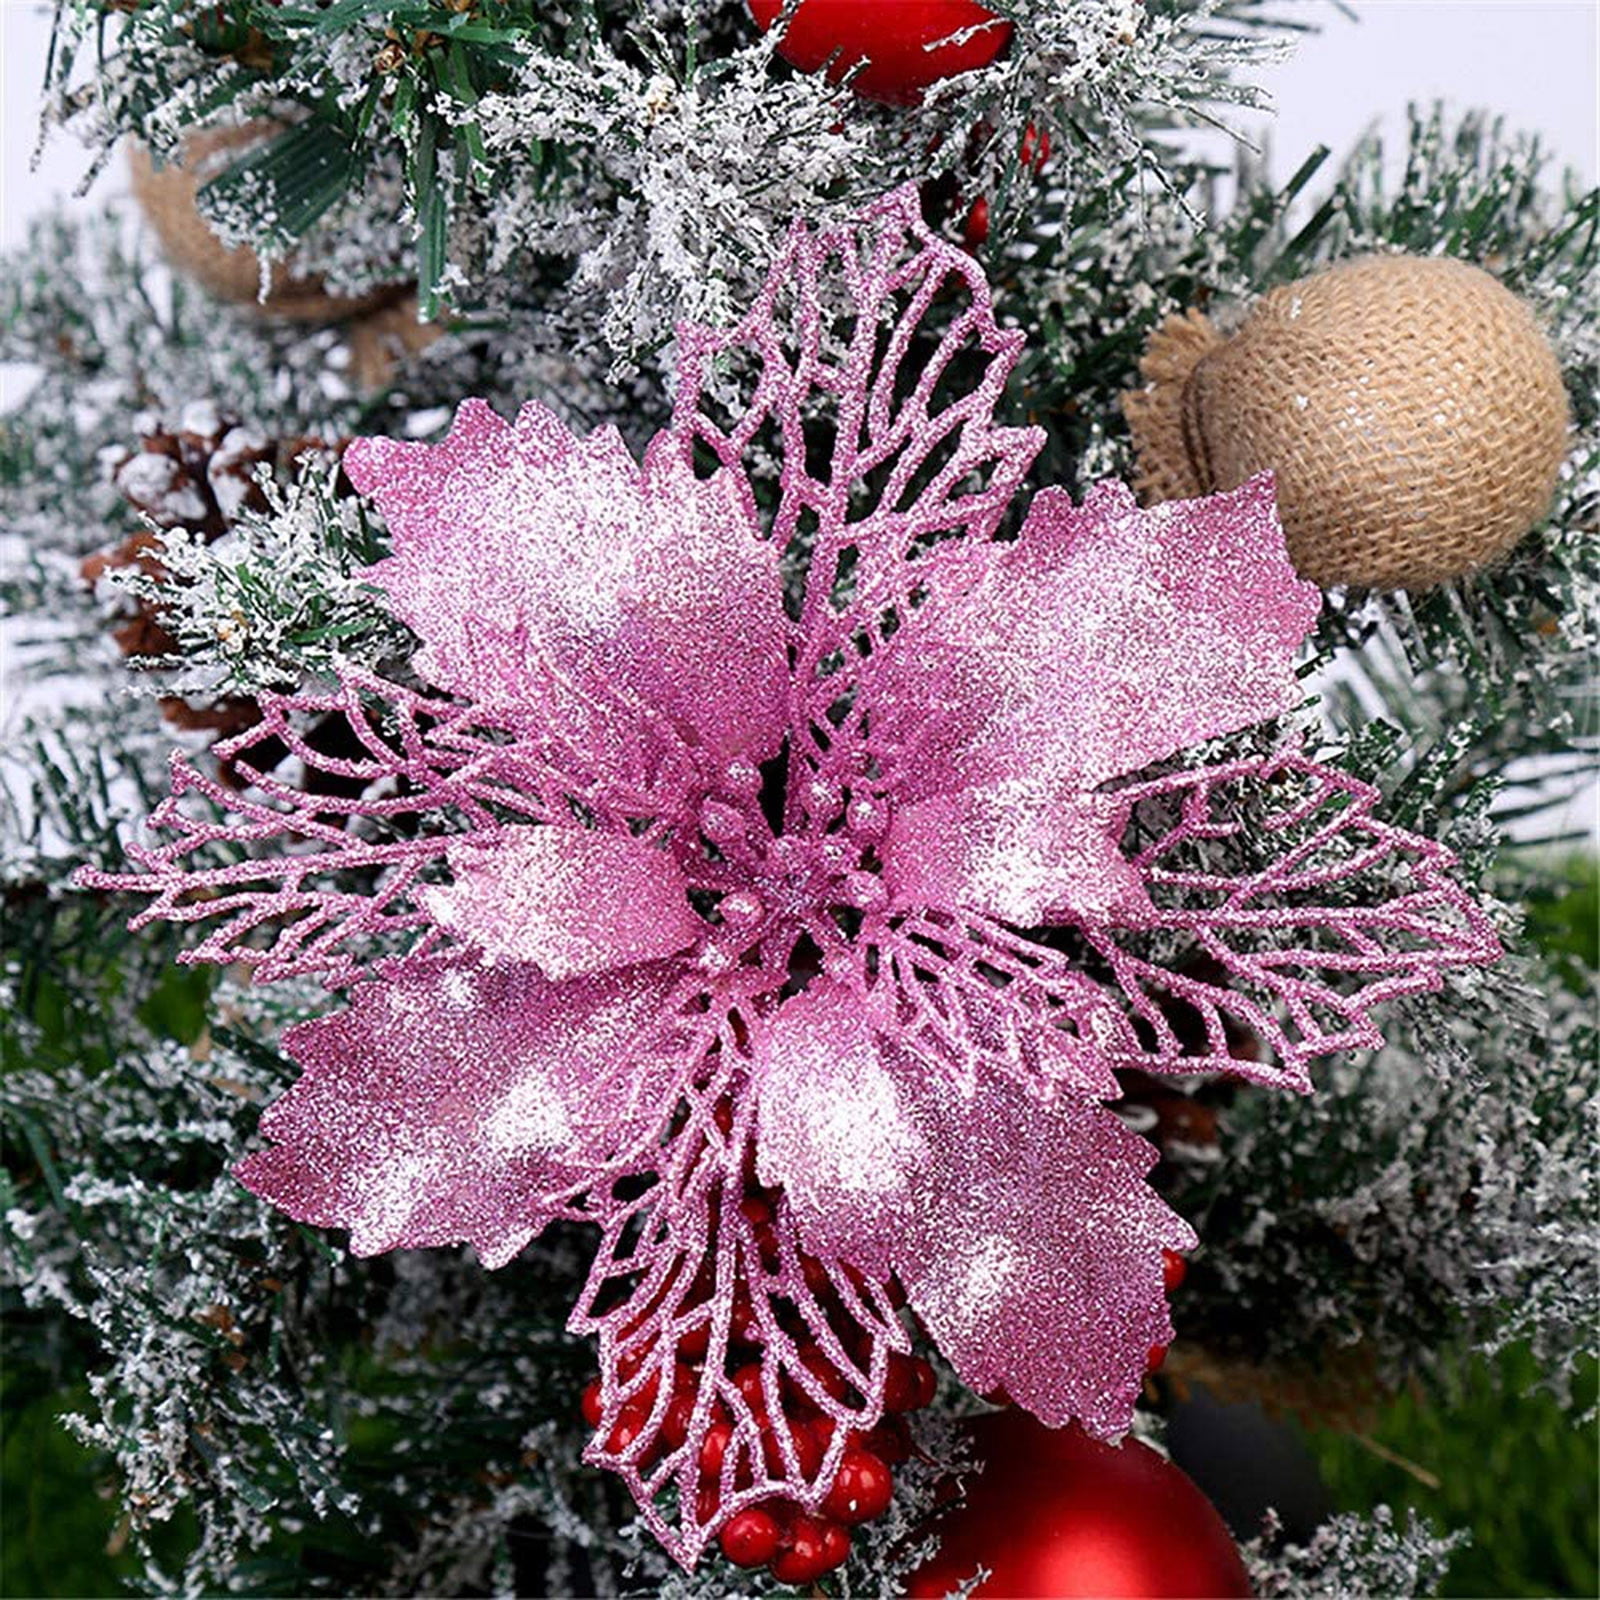 Kayannuo Christmas Decorations Christmas Clearance Christmas Decorations  Christmas Flowers Decorate The Christmas Tree, Christmas Wreaths, Gift  Boxes